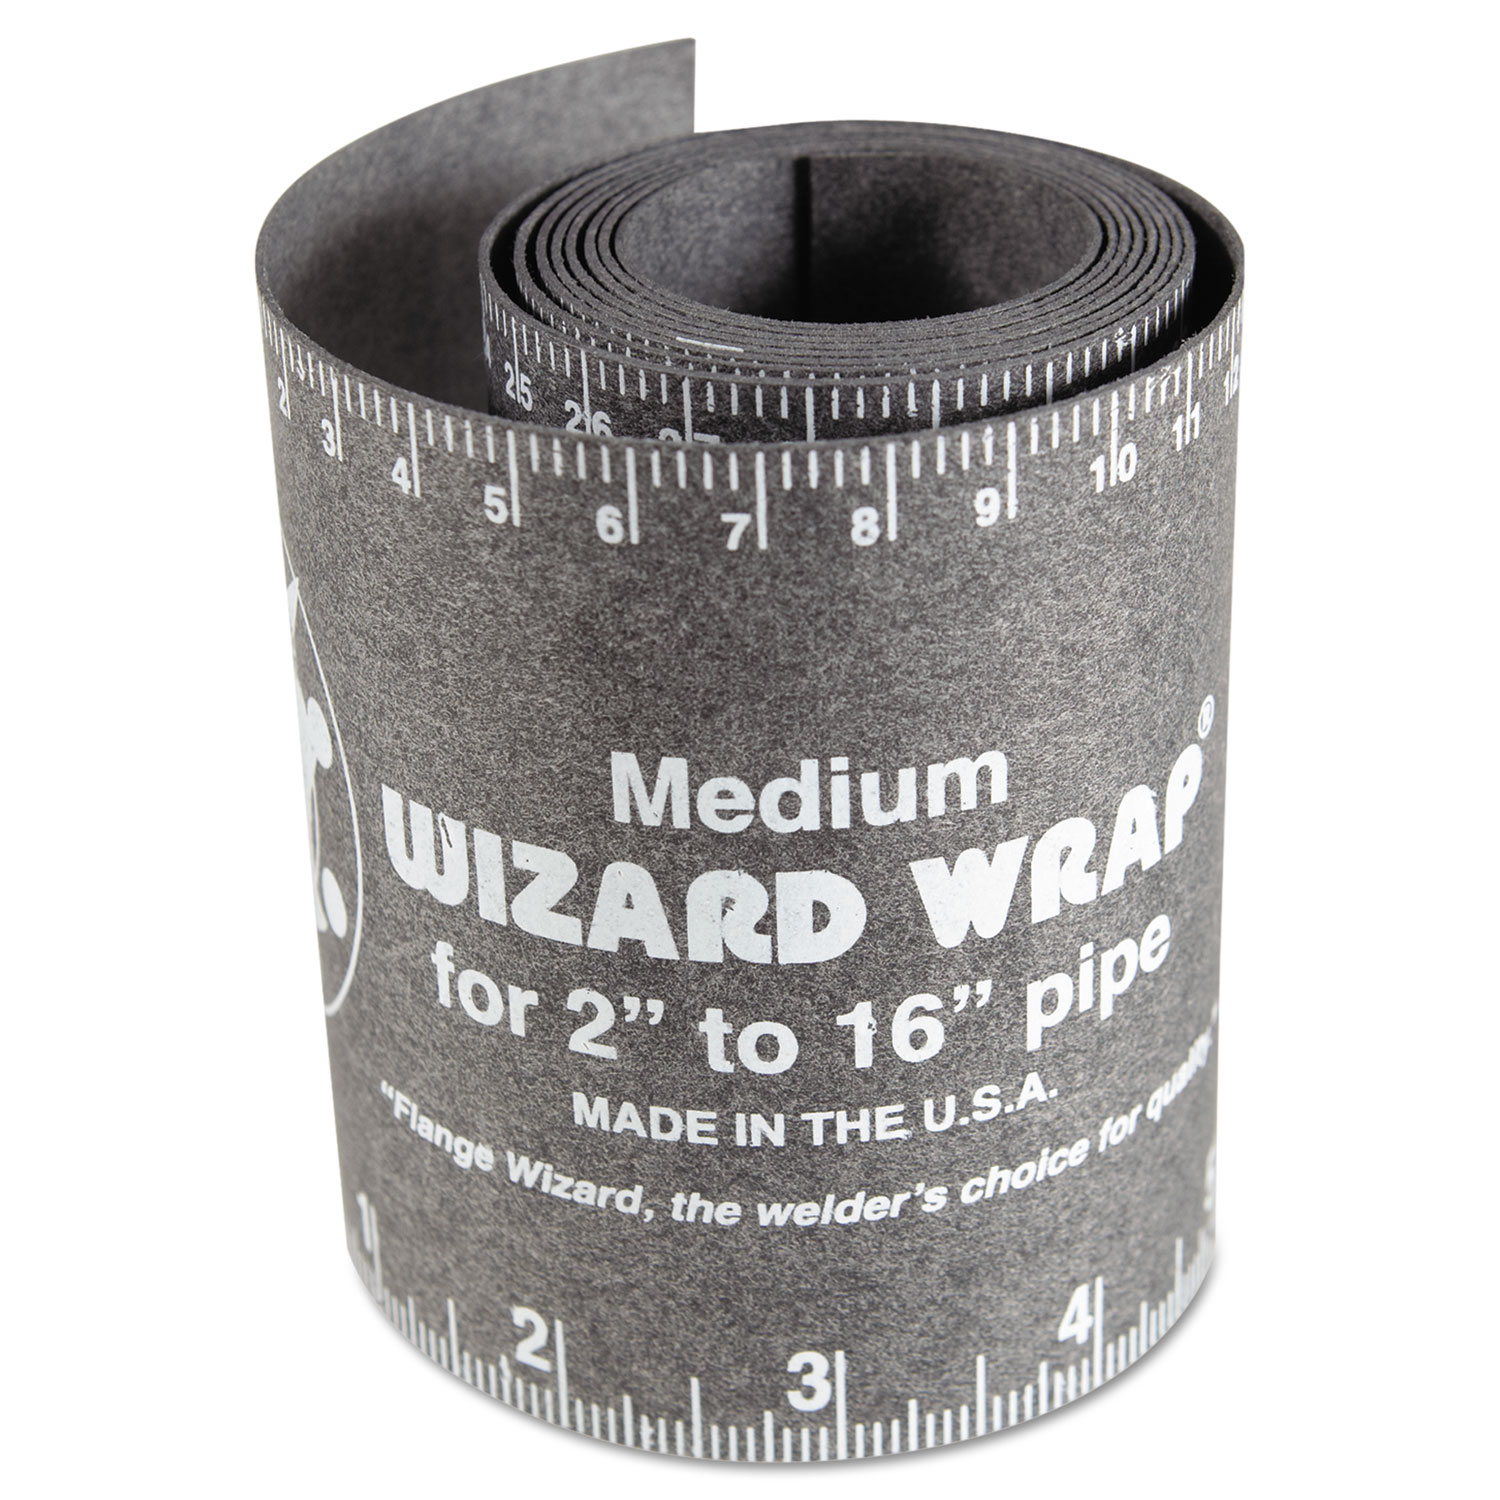 Wizard Wrap, Medium, 2 to 16 Pipe